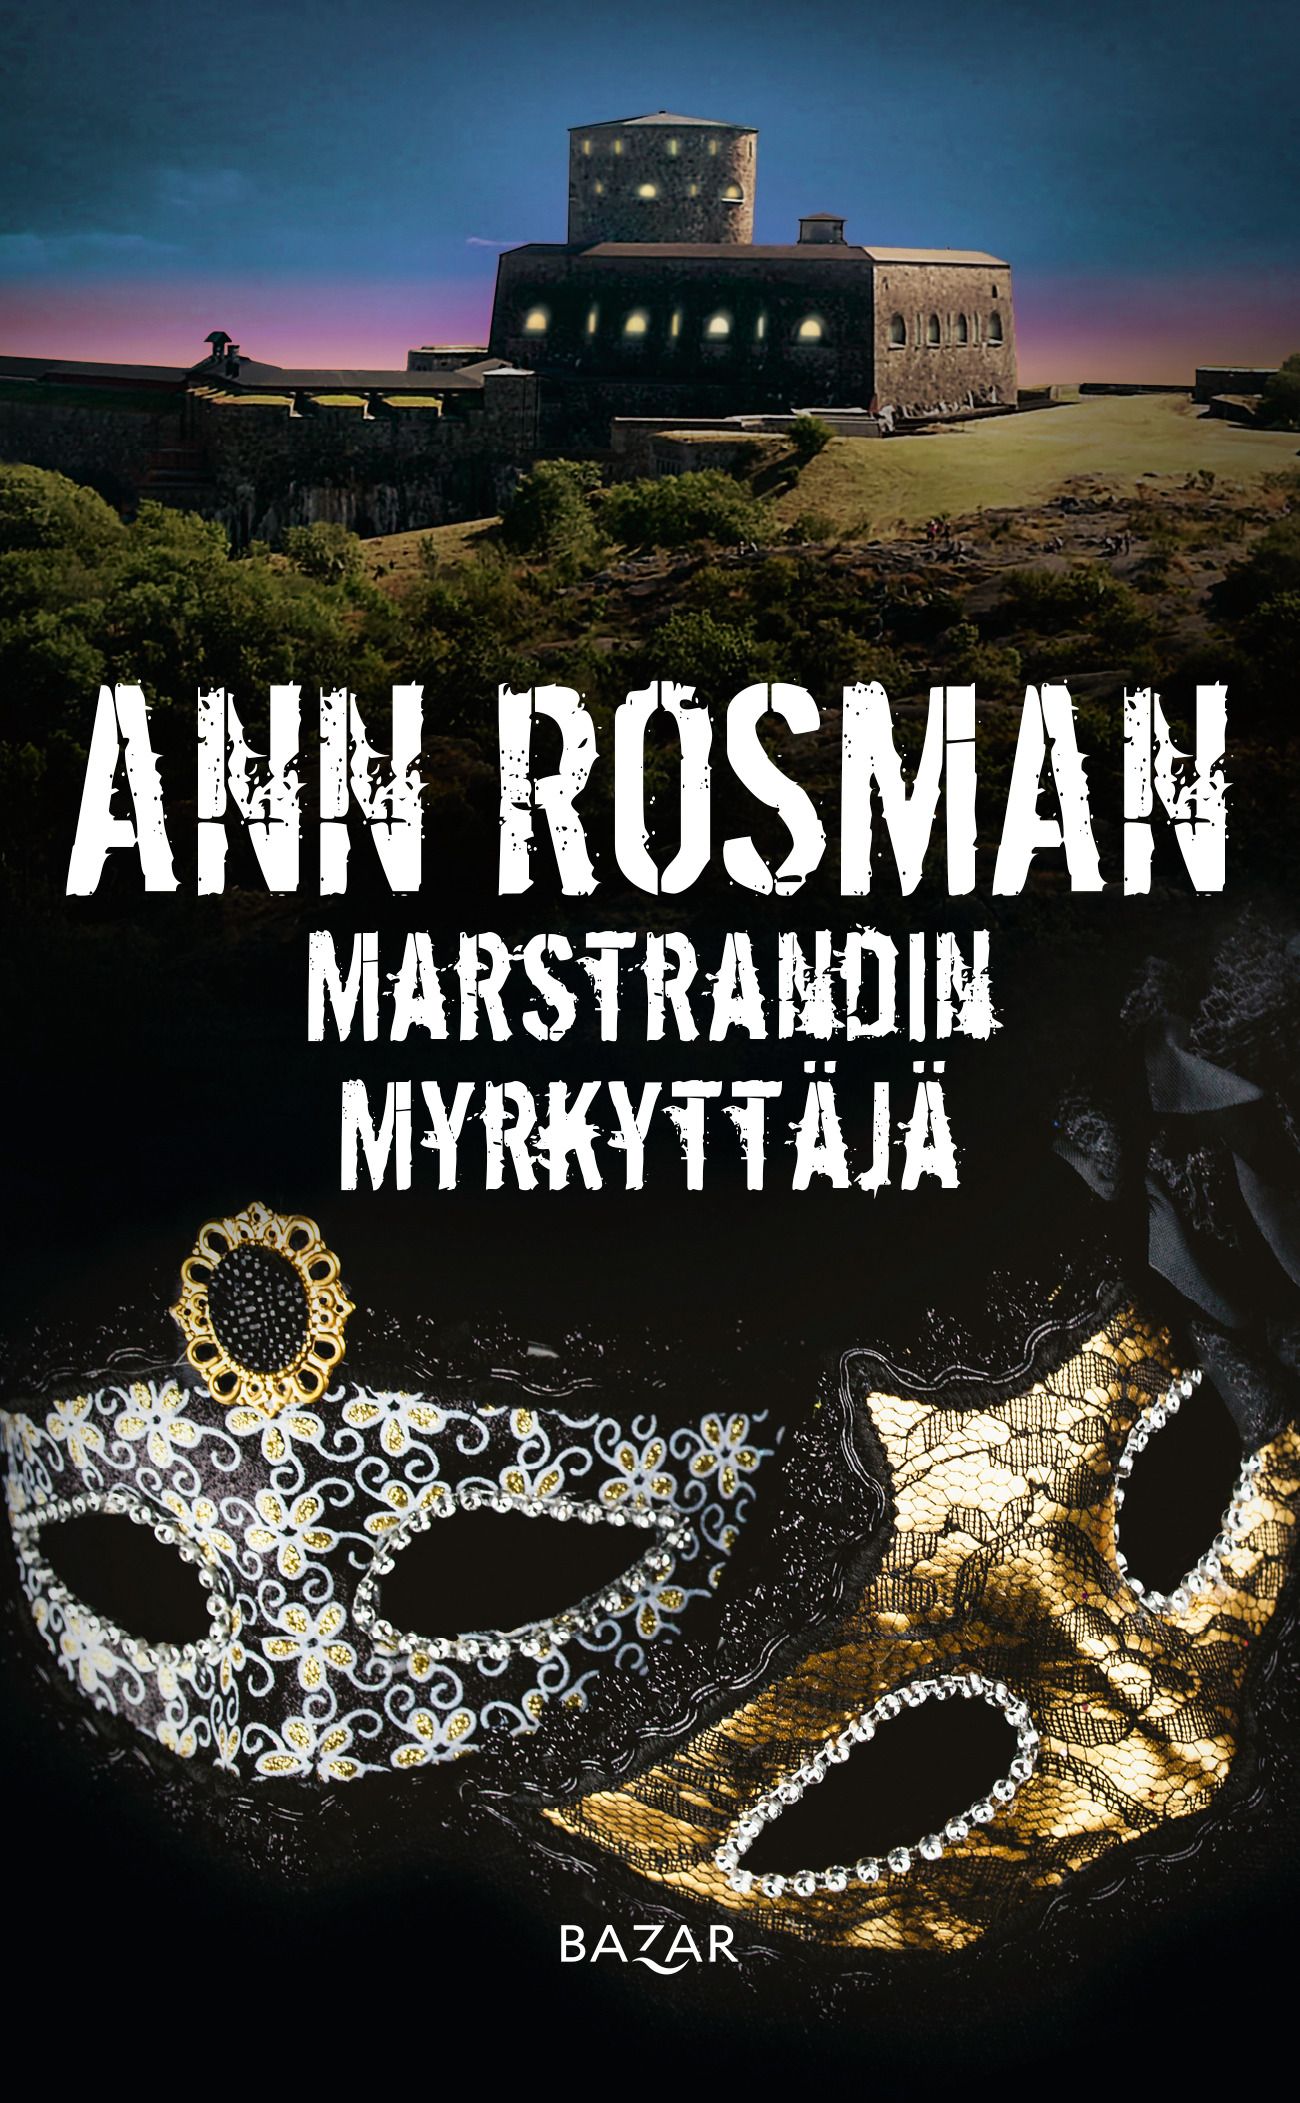 Kirjailijan Ann Rosman uusi kirja Marstrandin myrkyttäjä (UUSI)